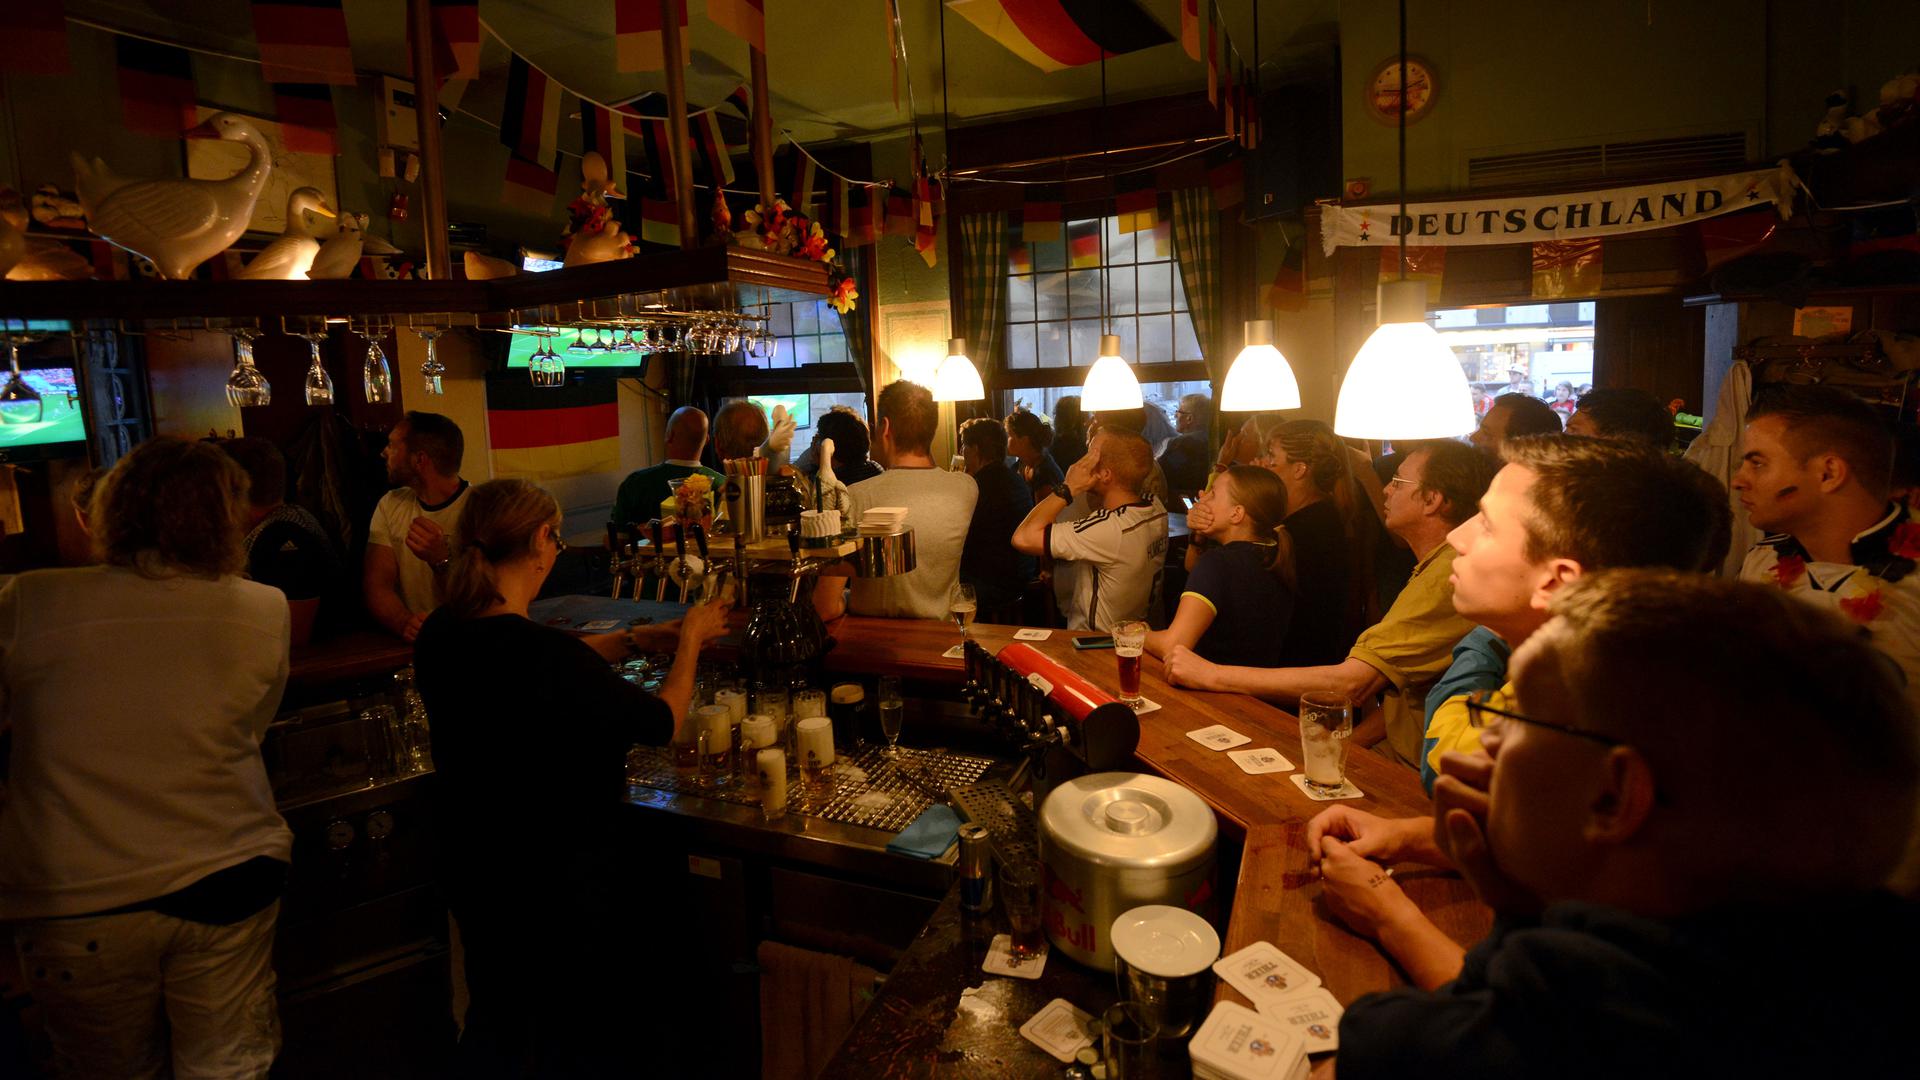 Fußballfans schauen am 13.07.2014 in einer Kneipe in Dortmund (Nordrhein-Westfalen) das Finale der Fußball-WM Deutschland - Argentinien. Foto: Caroline Seidel/dpa ++ +++ dpa-Bildfunk +++